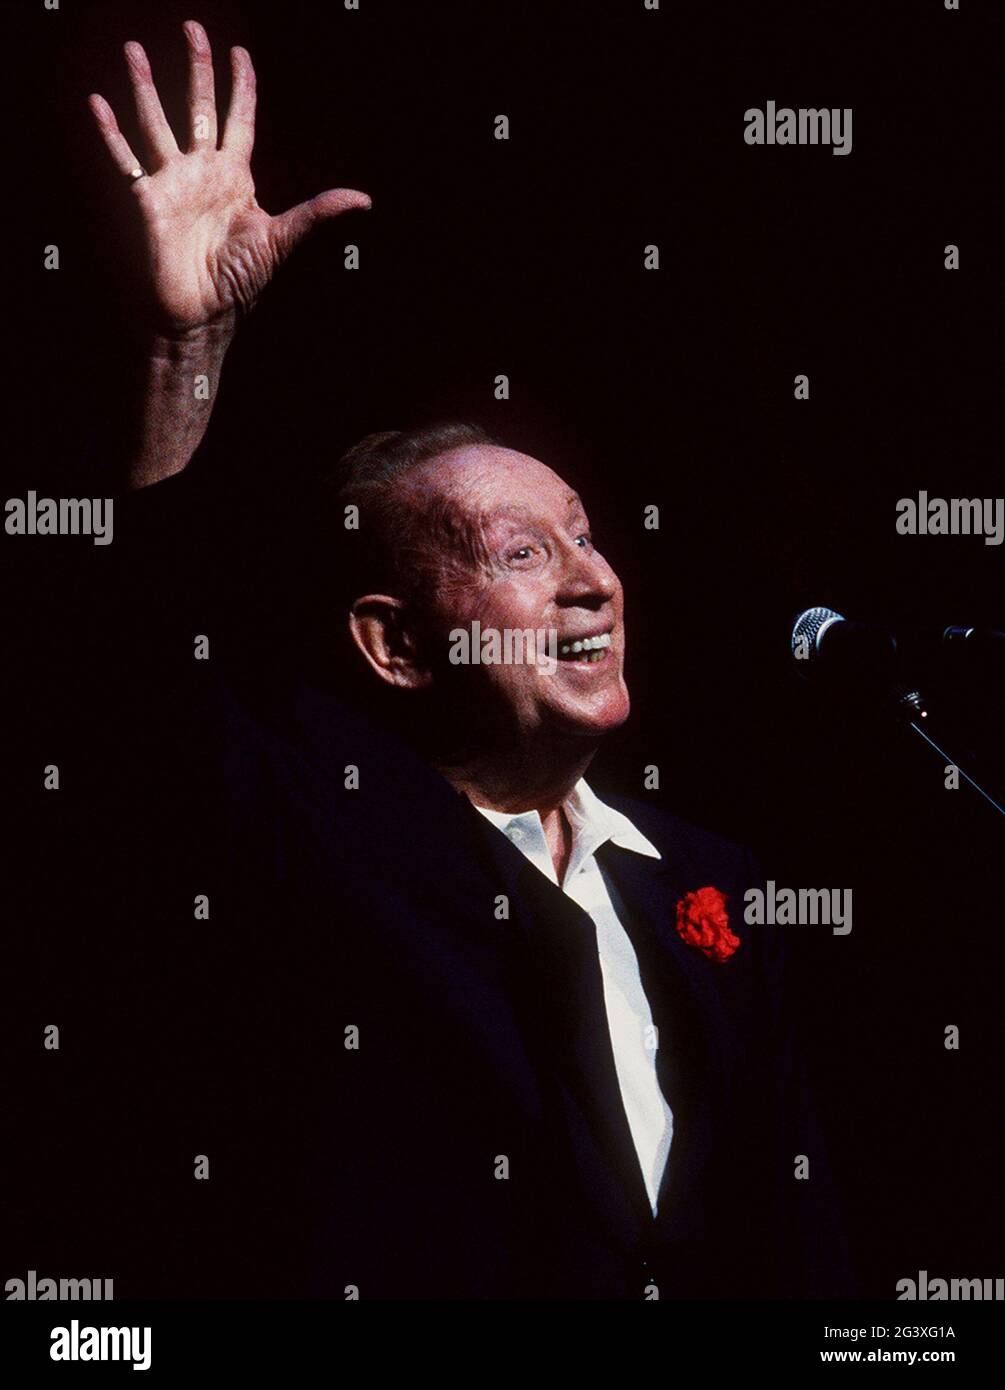 Charles Trenet, surnommé « le fou chantant » (le fou chantant), lors d'un concert à Rennes en 1988 Banque D'Images